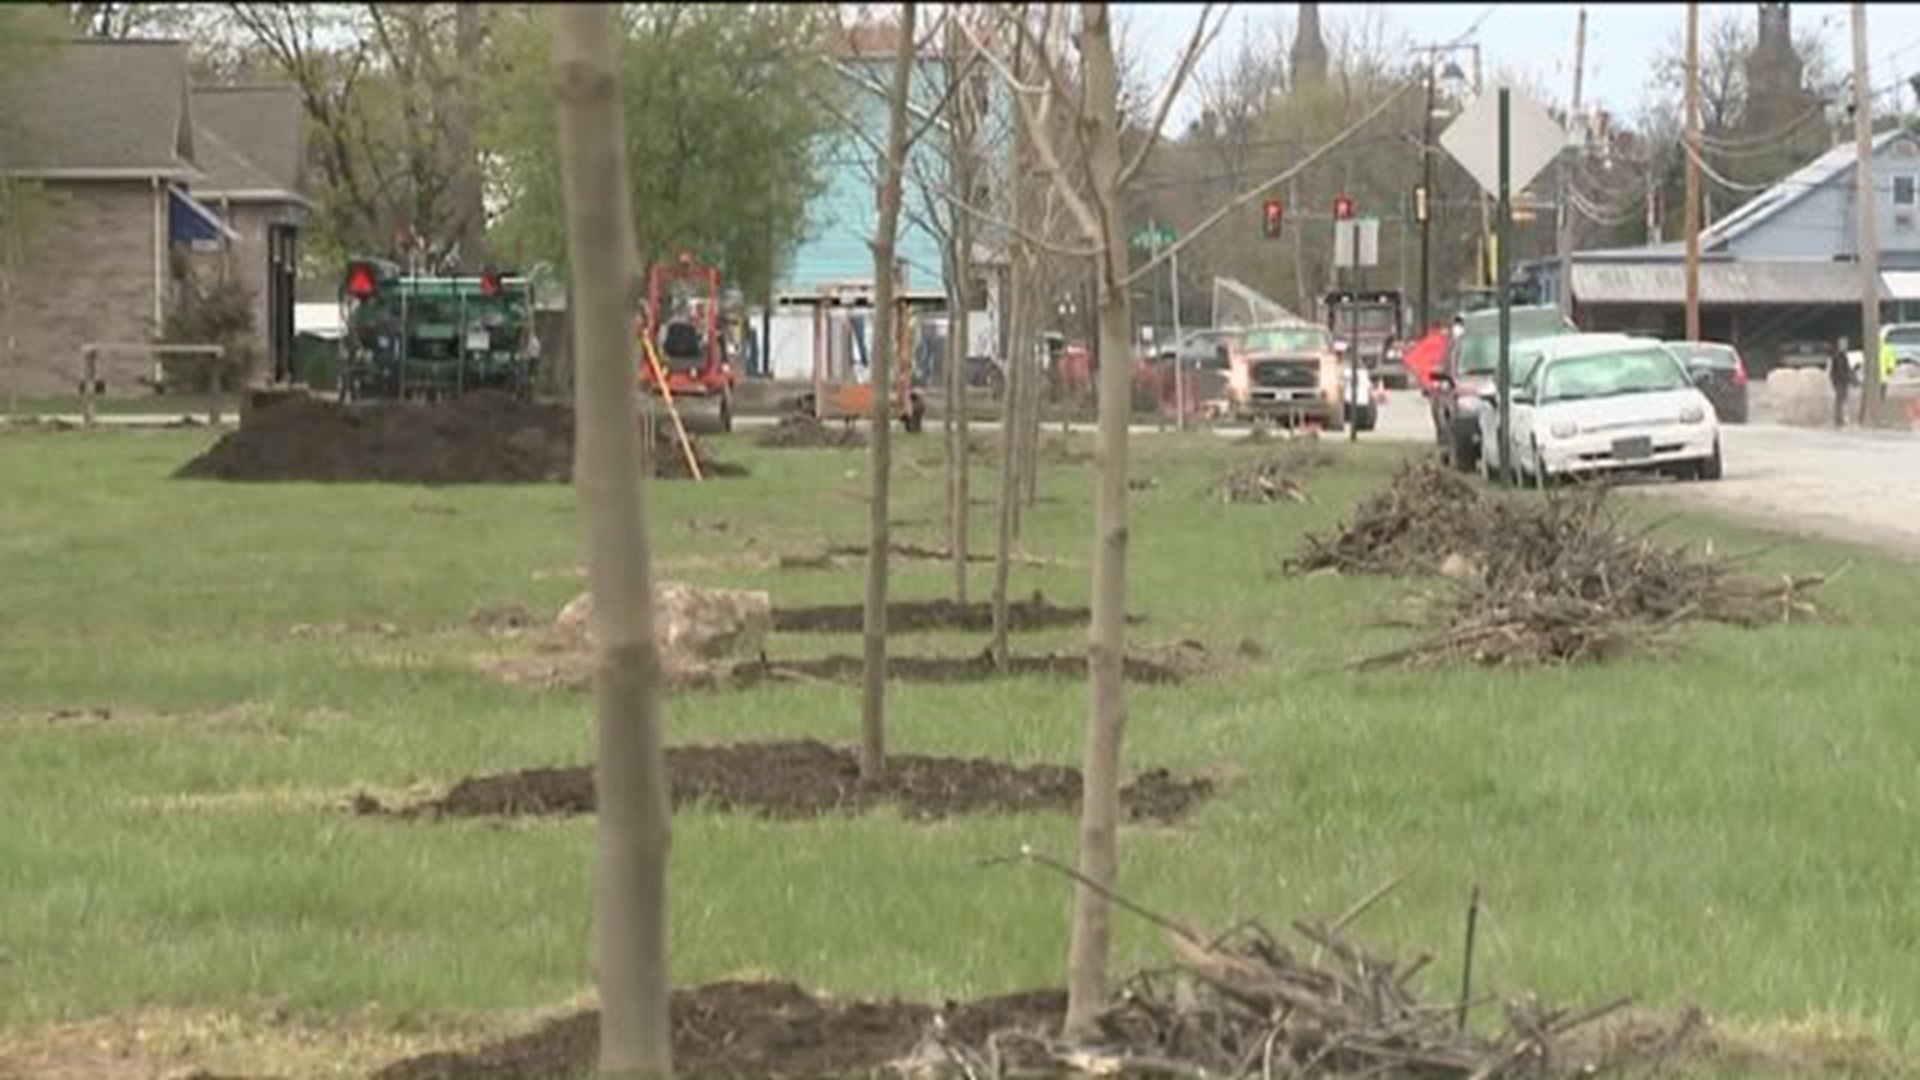 Volunteers Needed to Plant Trees in Lewisburg